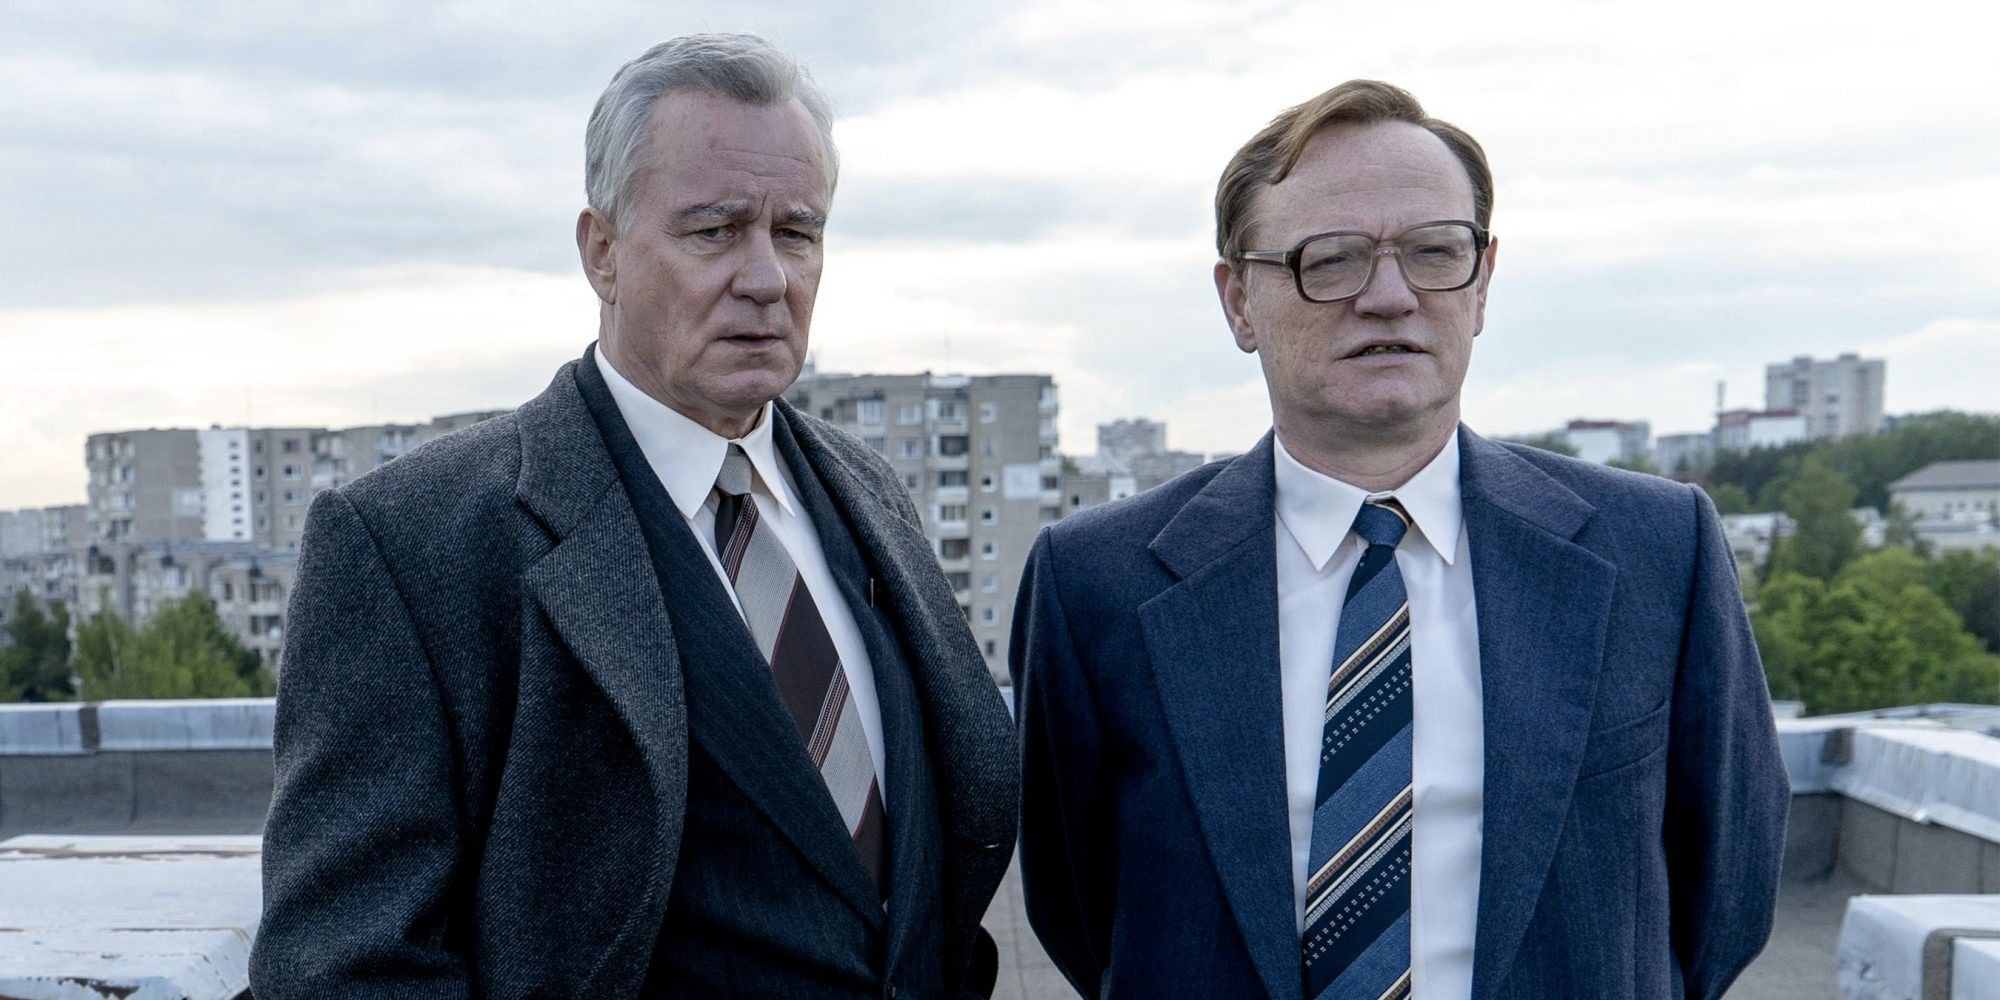 Stellan Skarsgård as Boris Shcherbina and Jared Harris as Valery Legasov in Chernobyl